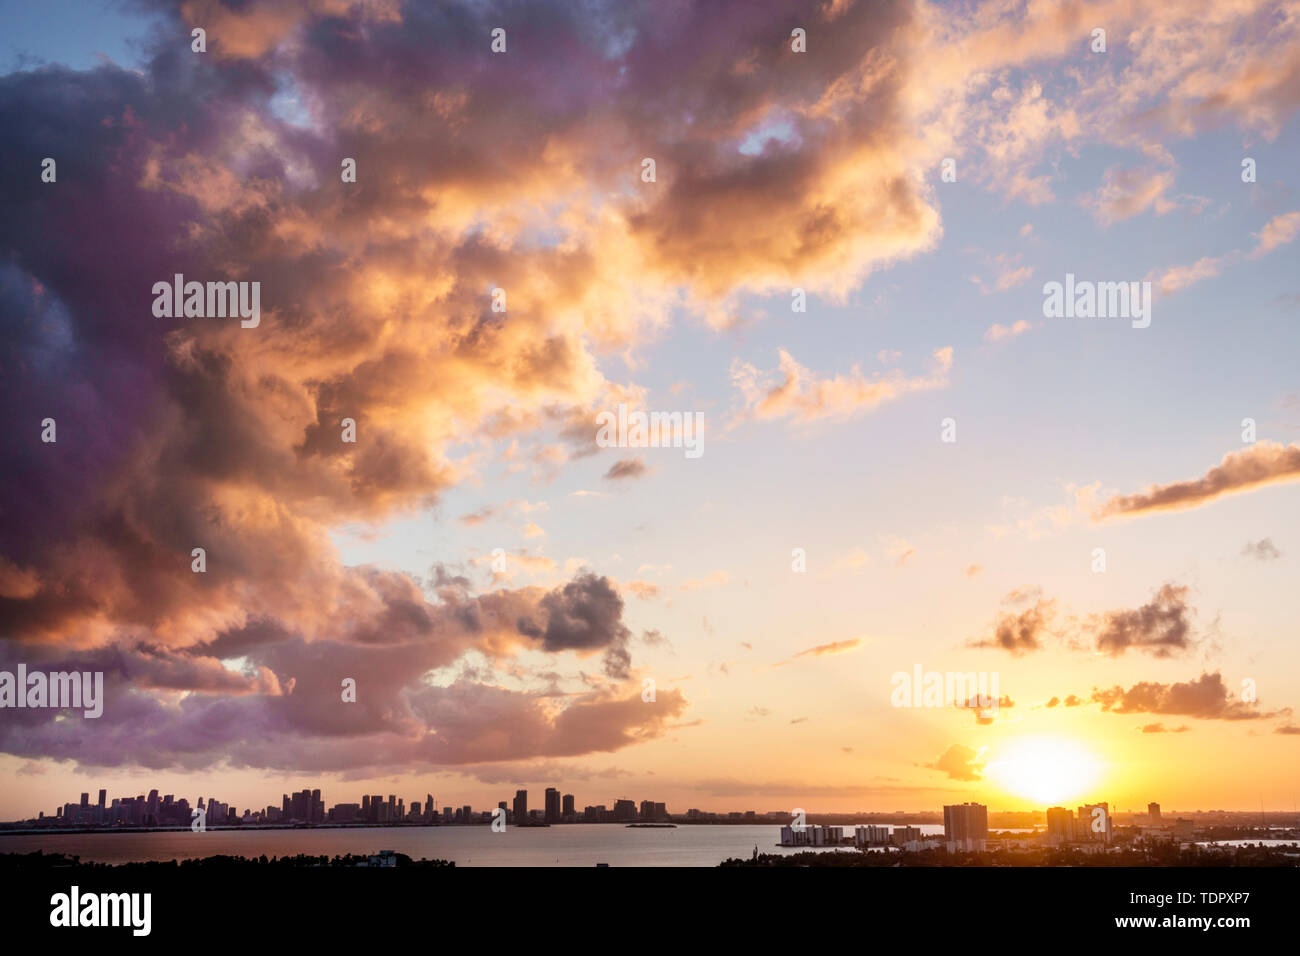 Miami Florida,Biscayne Bay eau,centre ville ligne d'horizon, gratte-ciel gratte-ciel hauteur gratte-ciel bâtiment bâtiments bâtiments, nuages,front d'orage,coucher de soleil,jet,ref Banque D'Images